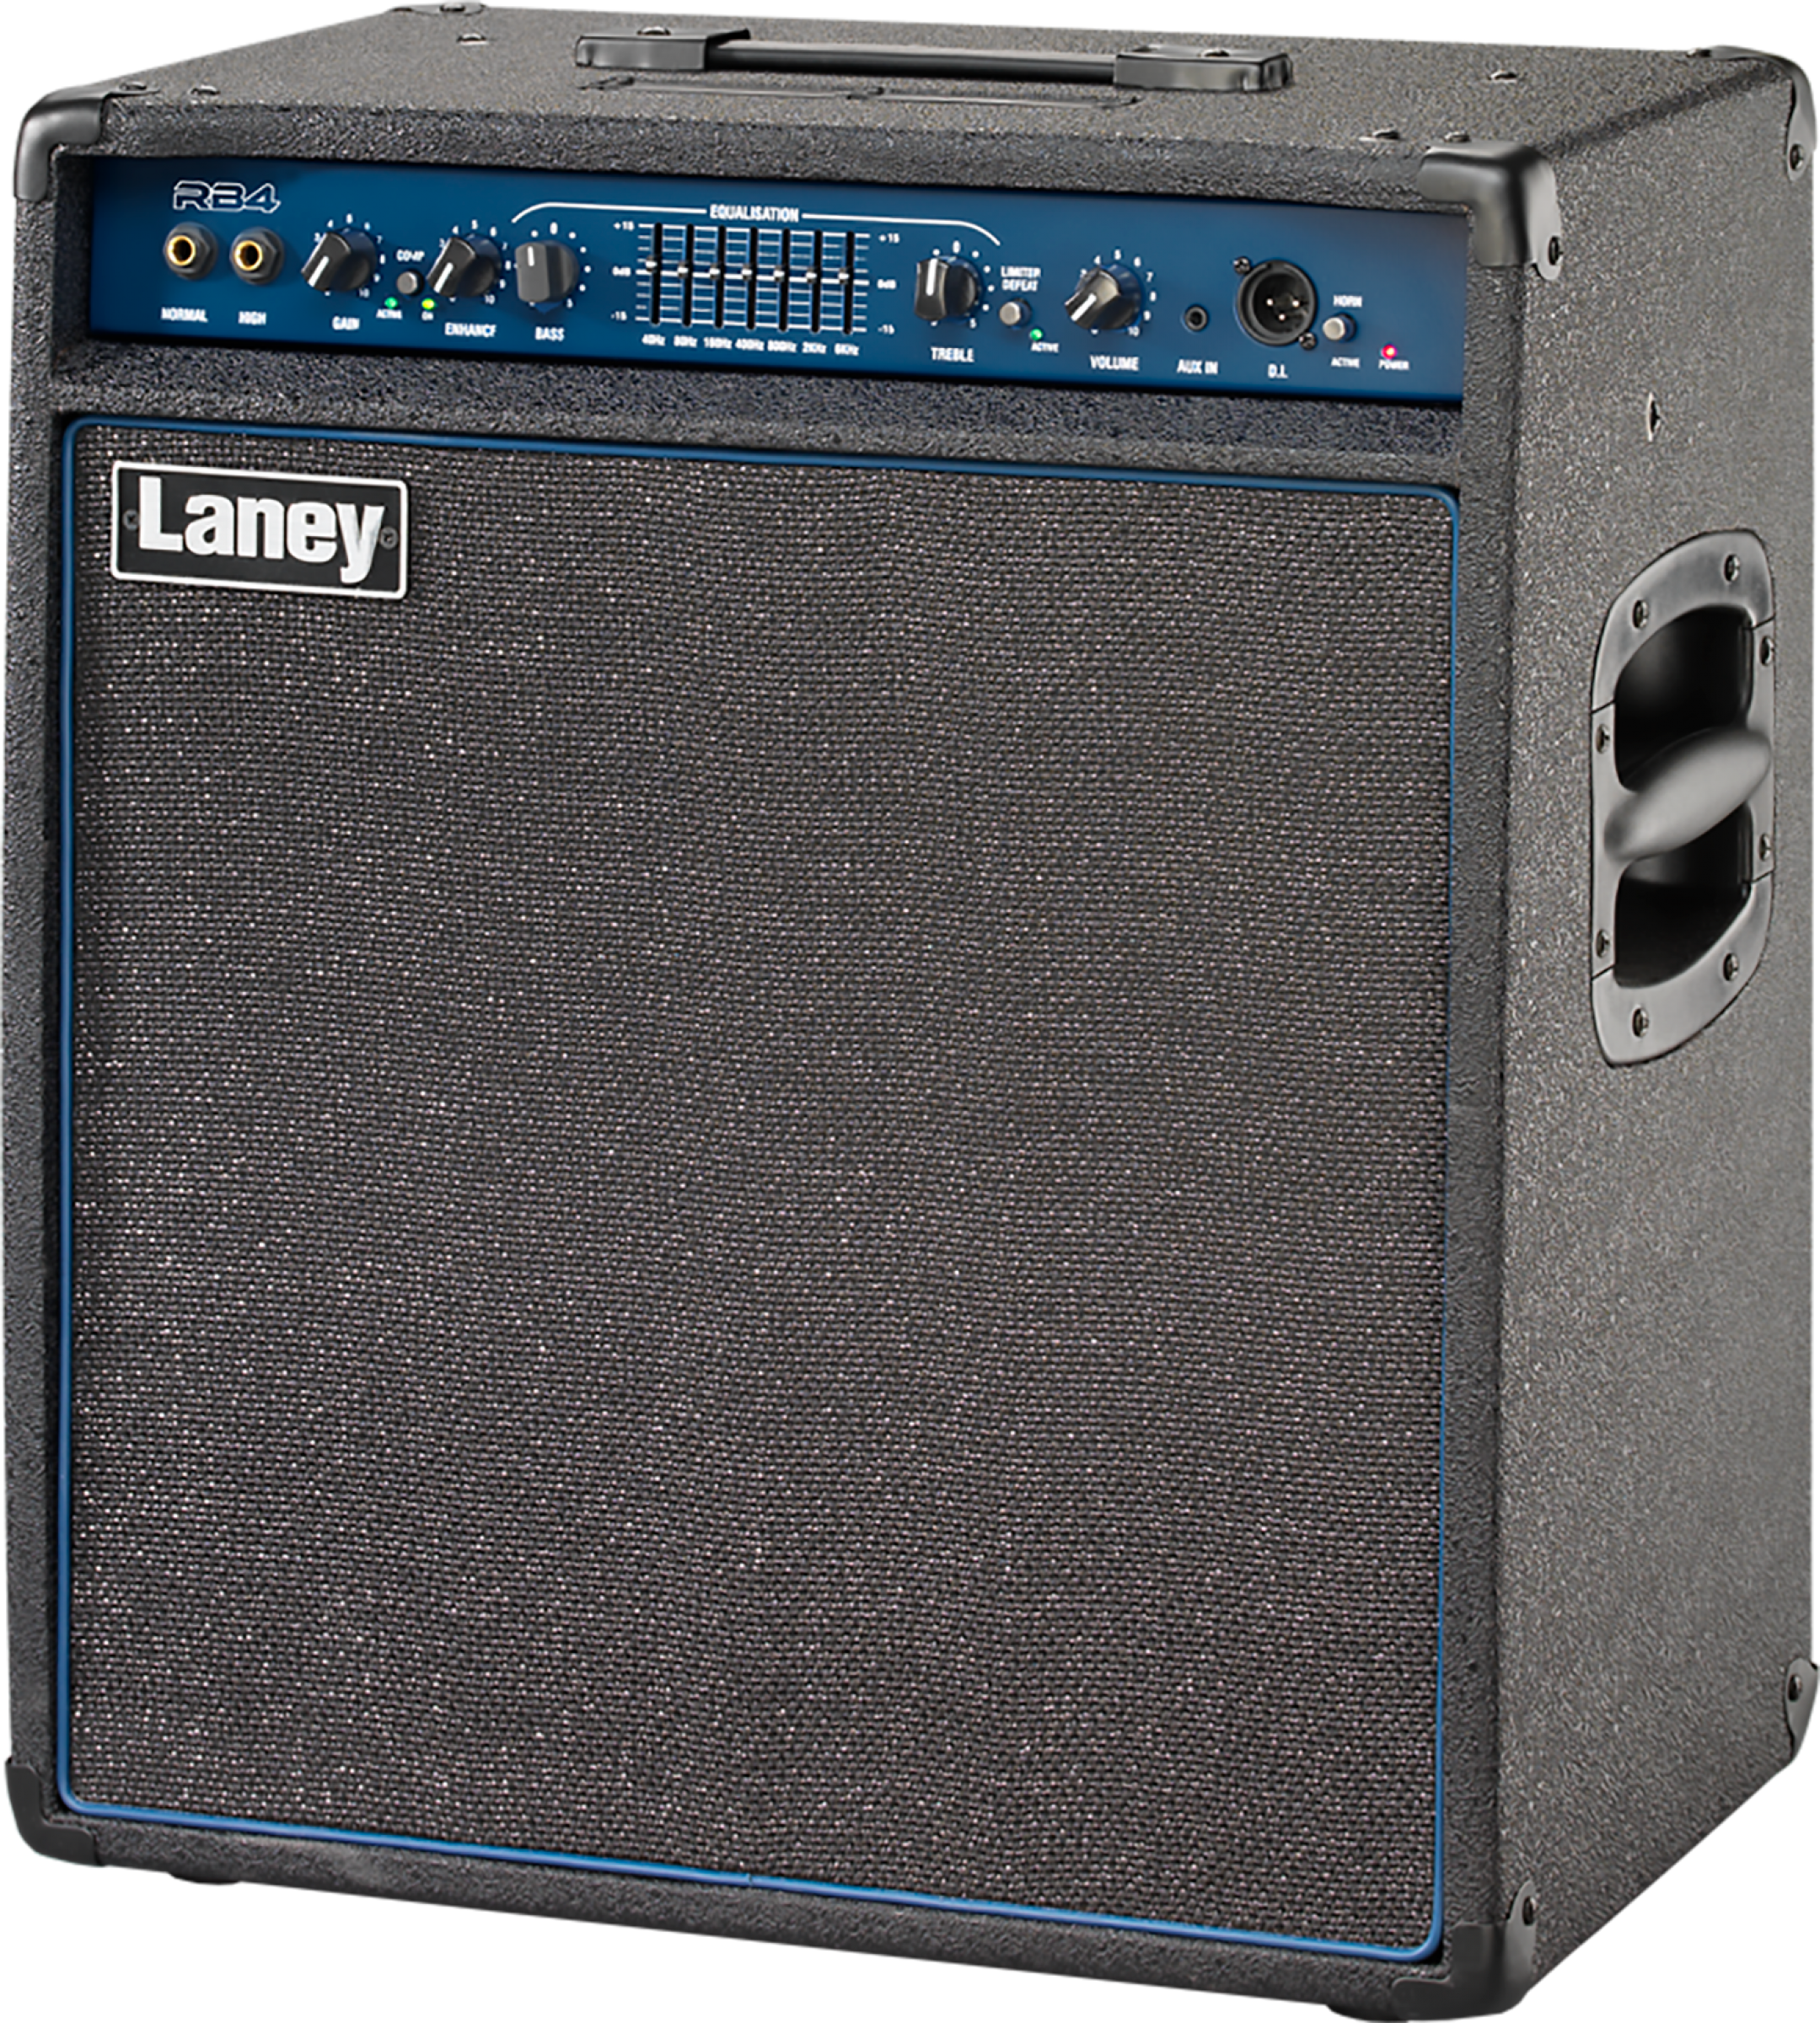 Laney Rb4 165w 1x15 - Combo amplificador para bajo - Variation 2